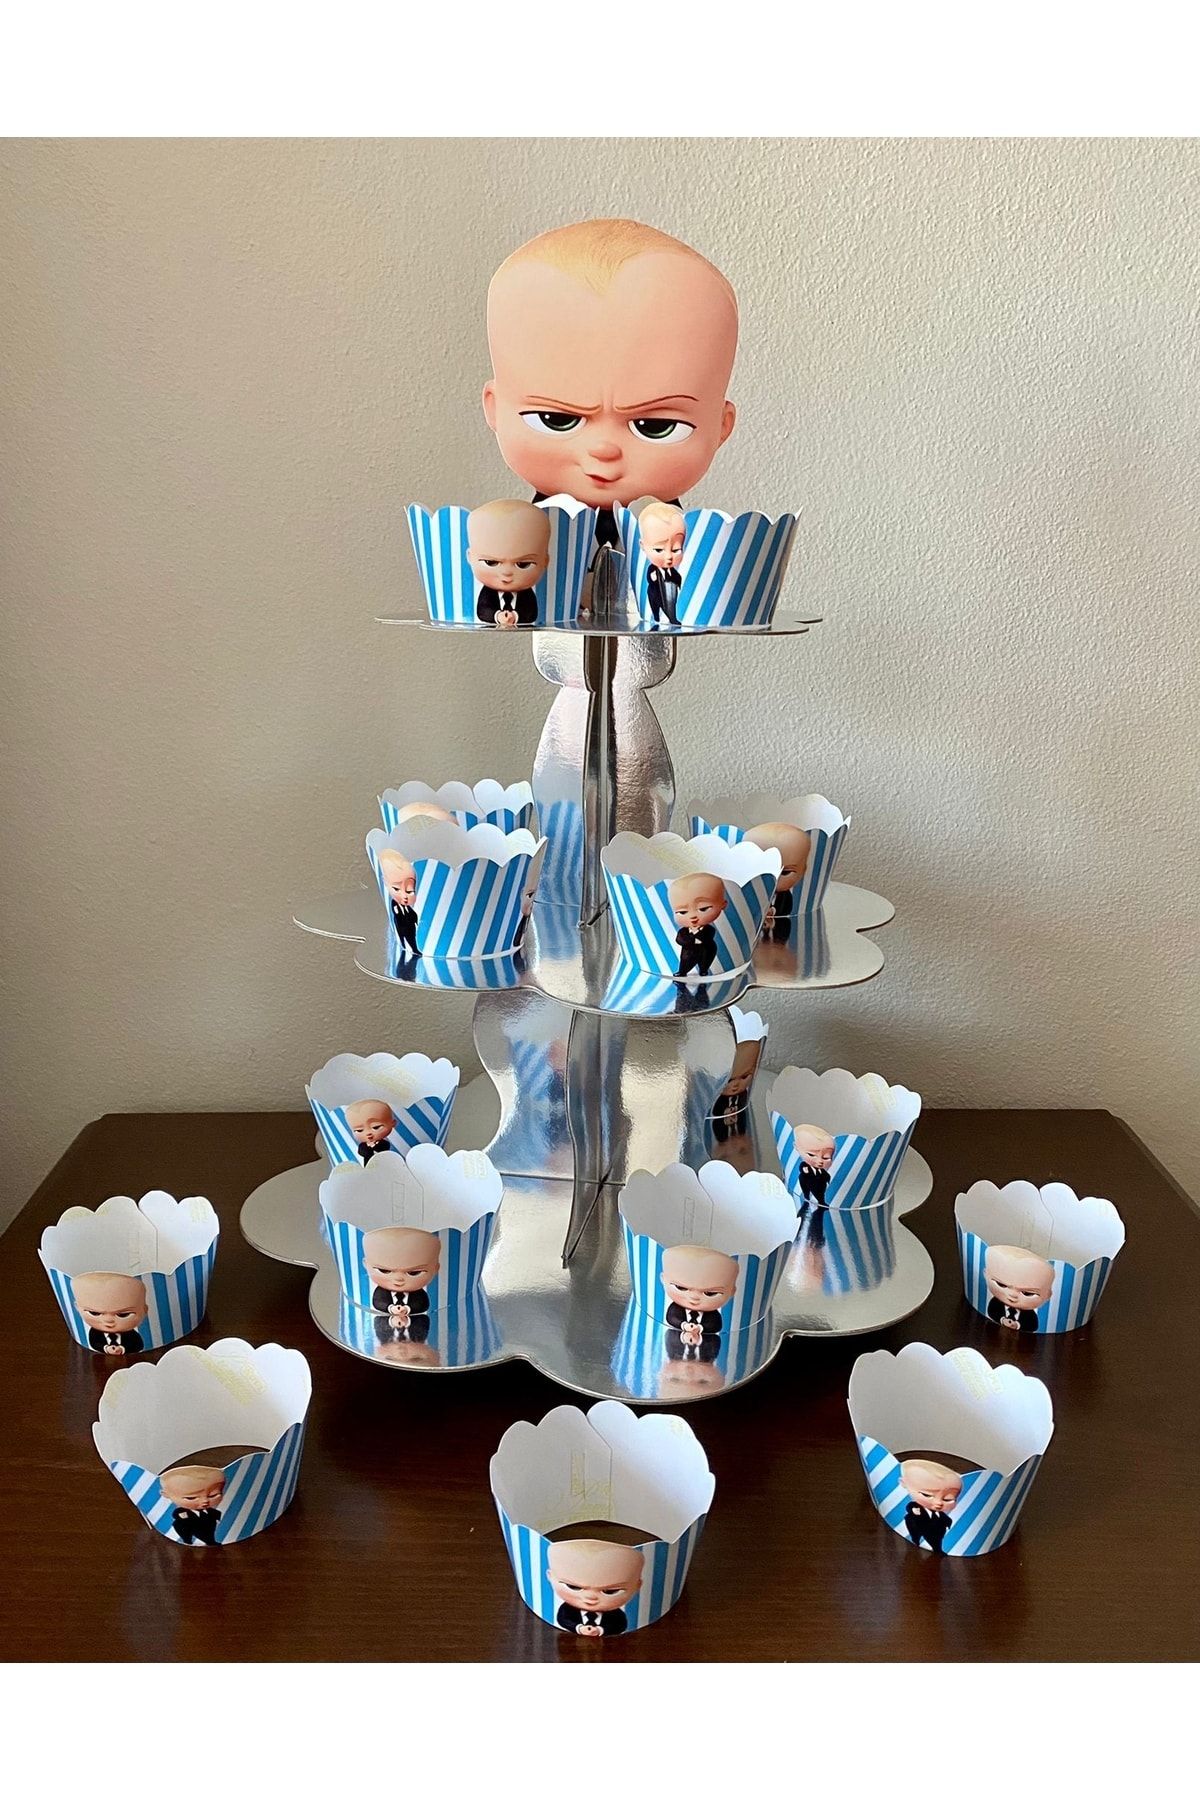 Okarttasarım Baby Boss (PATRON BEBEK) Cupcake Standı Ve 10 Adet Cupcake Sargısı